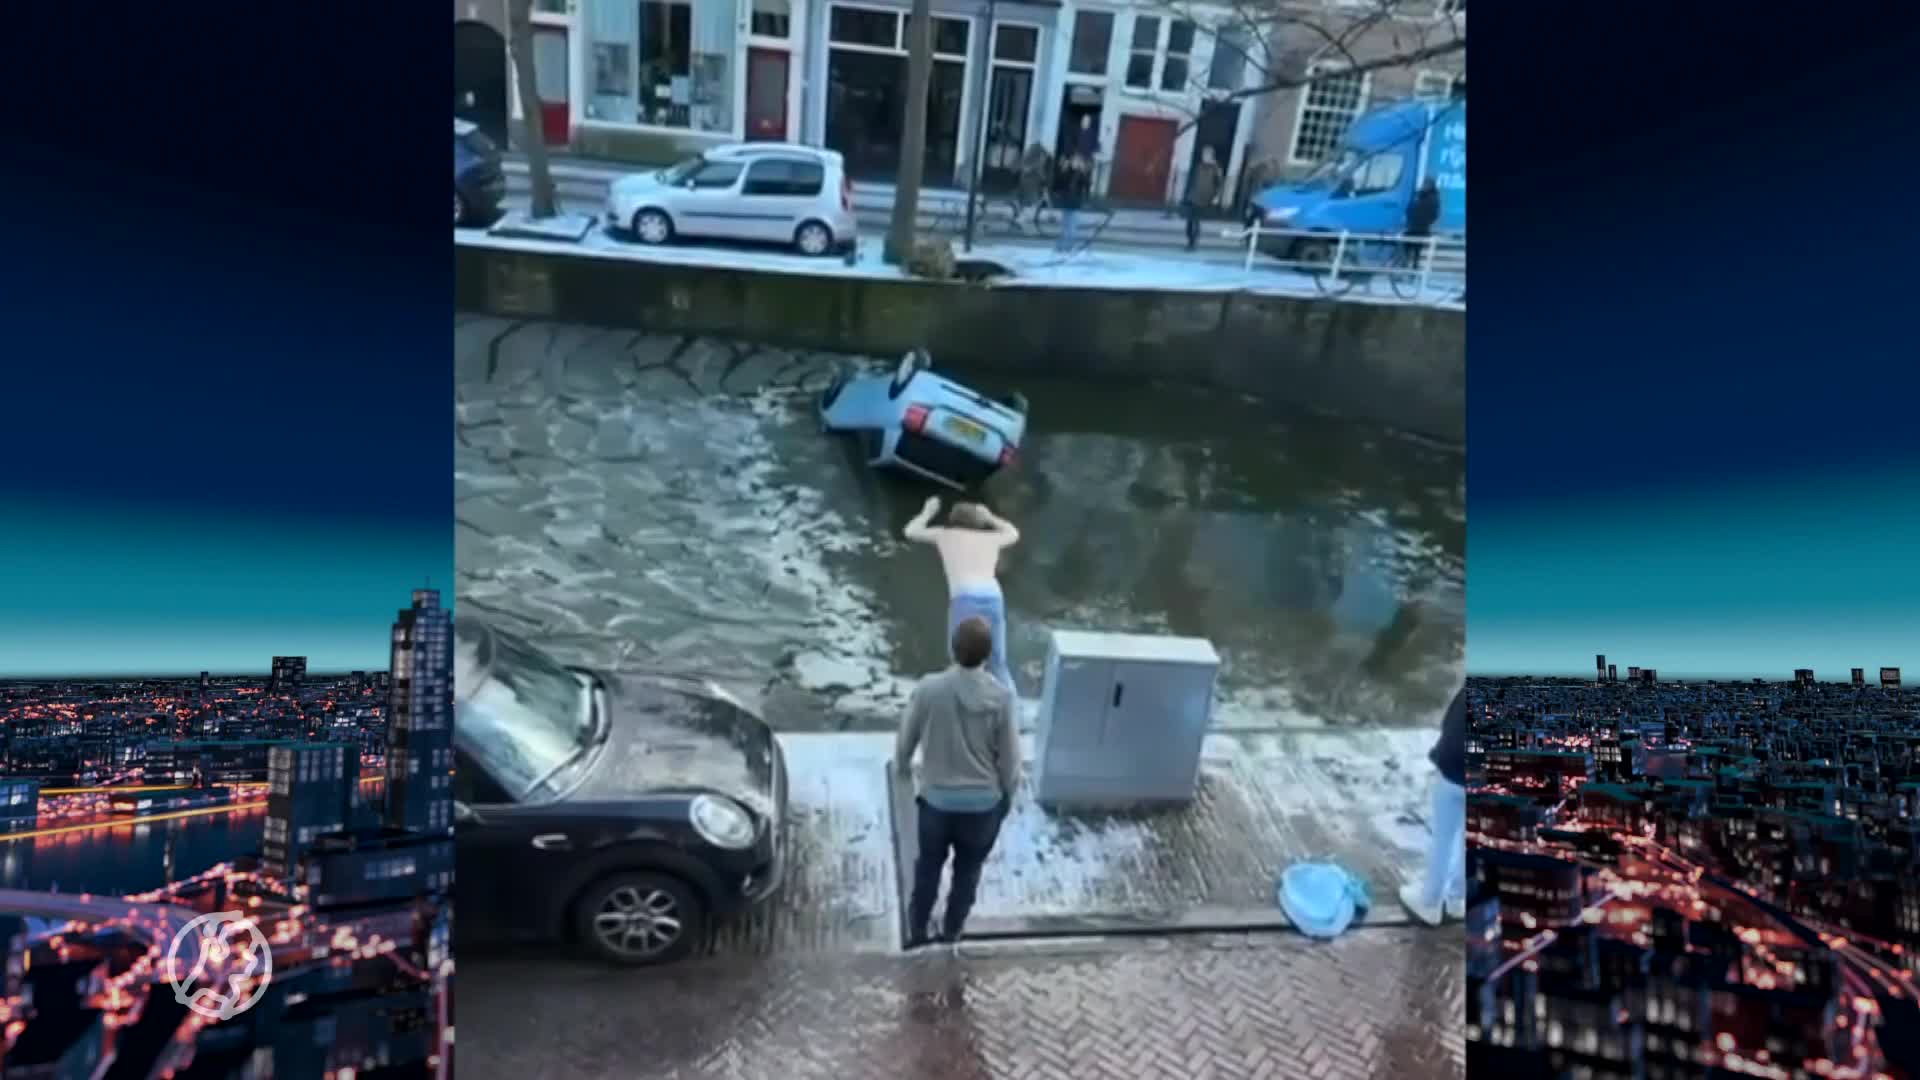 Student springt in ijskoud water in Delft om vrouw uit auto te redden